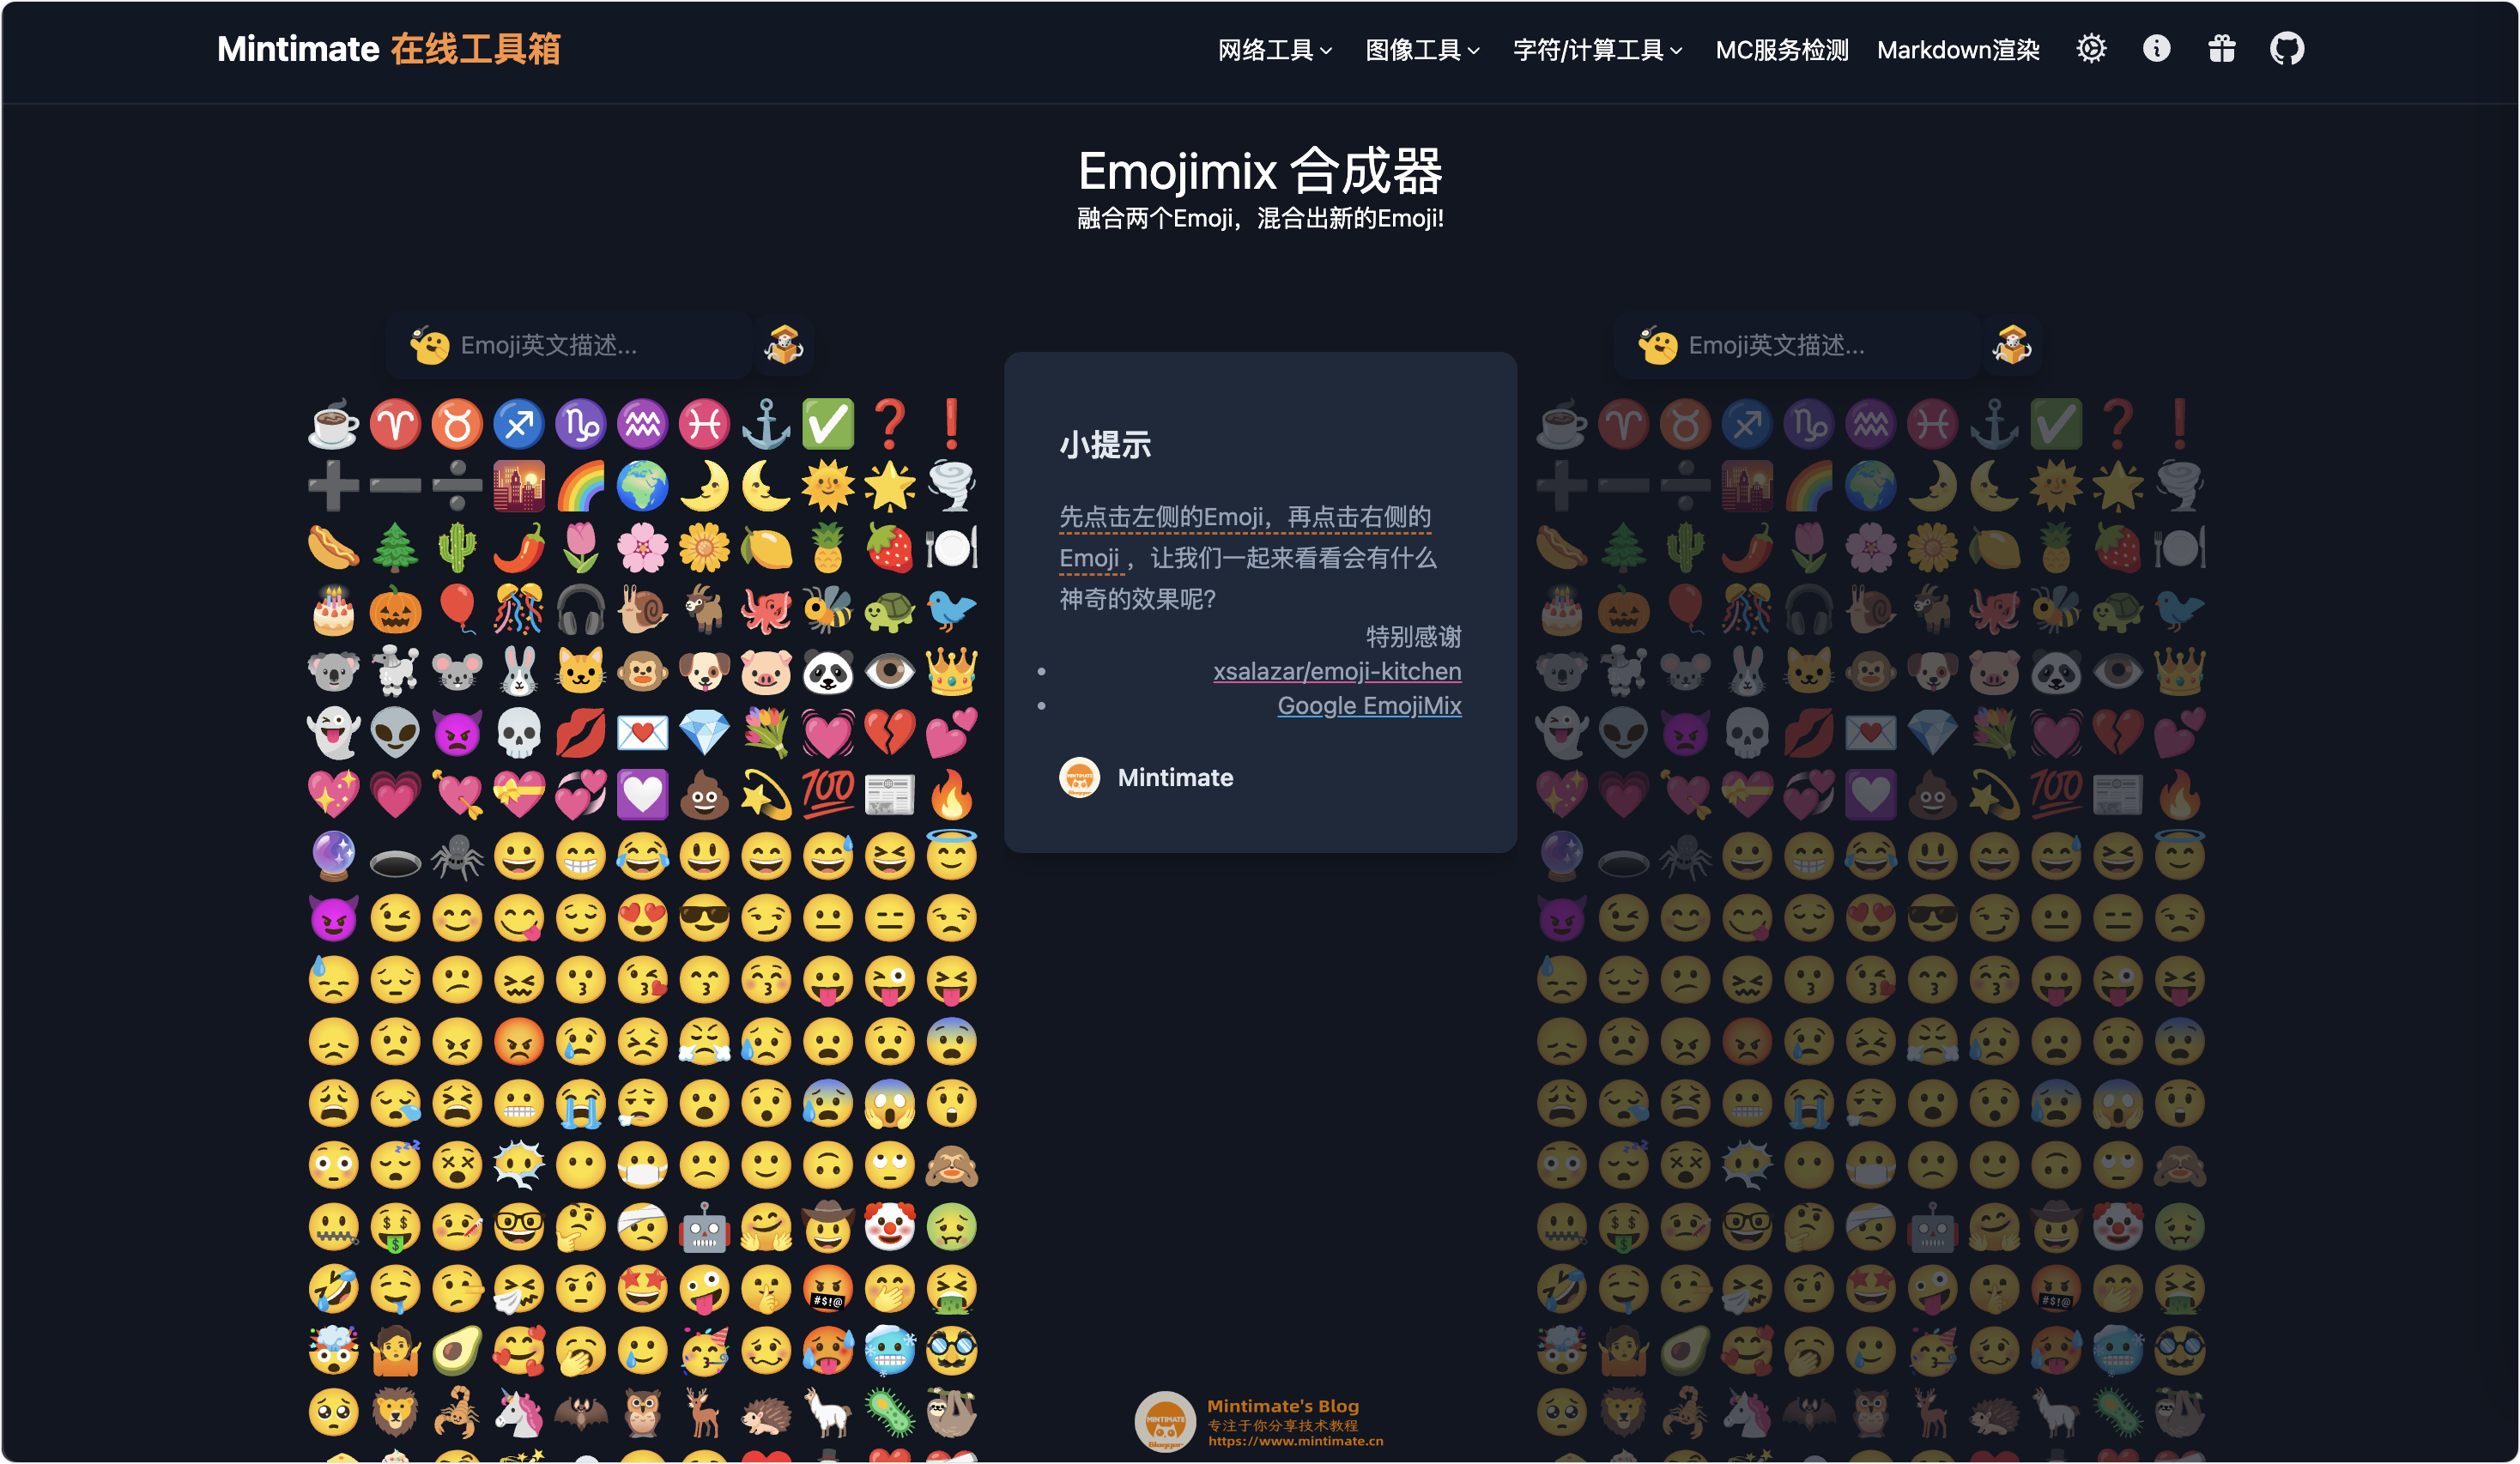 金拱门emoji表情图片